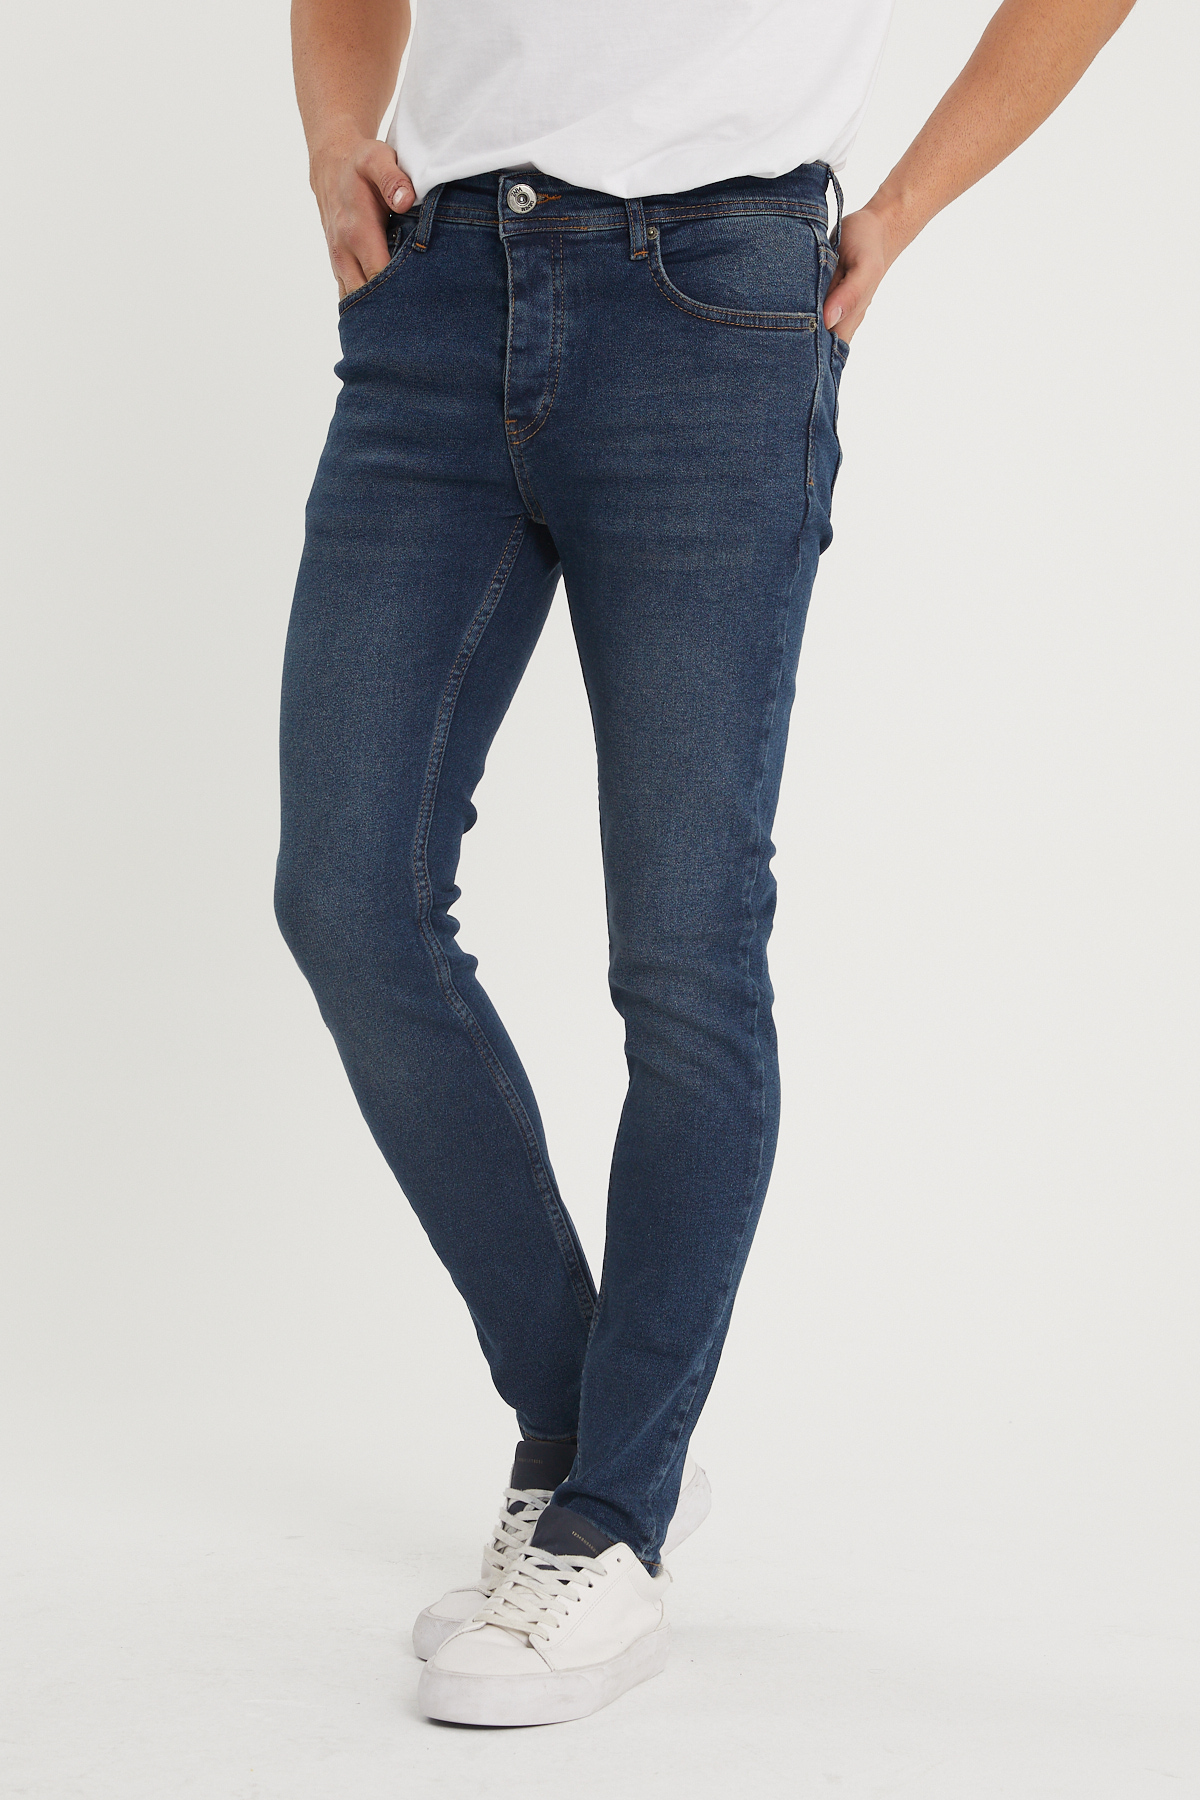 Yıkamalı Lacivert Slim Fit Jean Pantolon 1KXE5-44351-48 